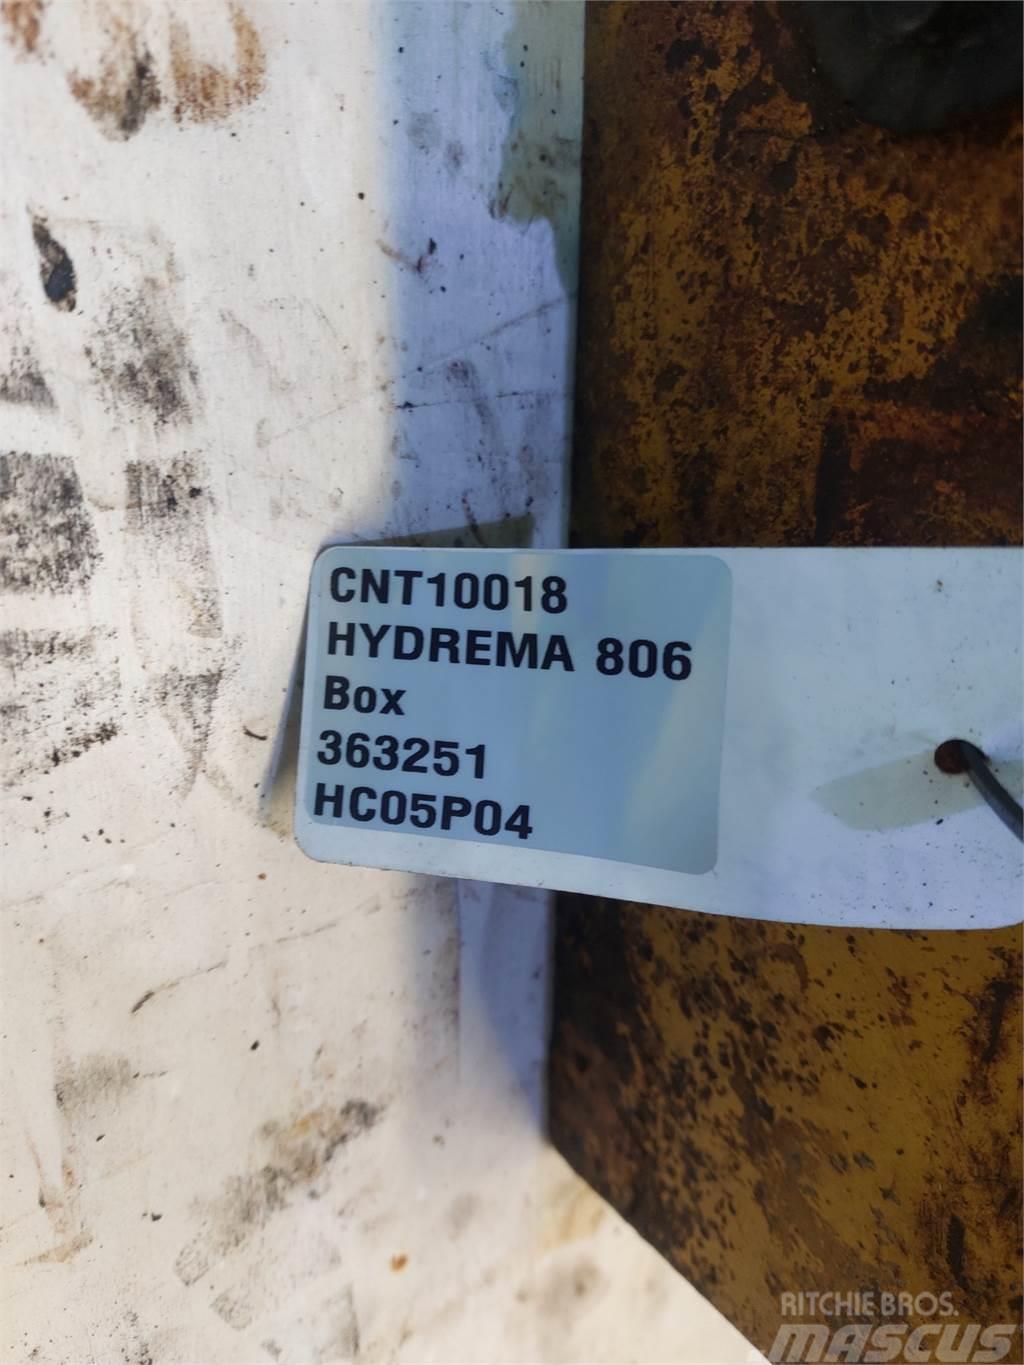 Hydrema 806 Puinbakken